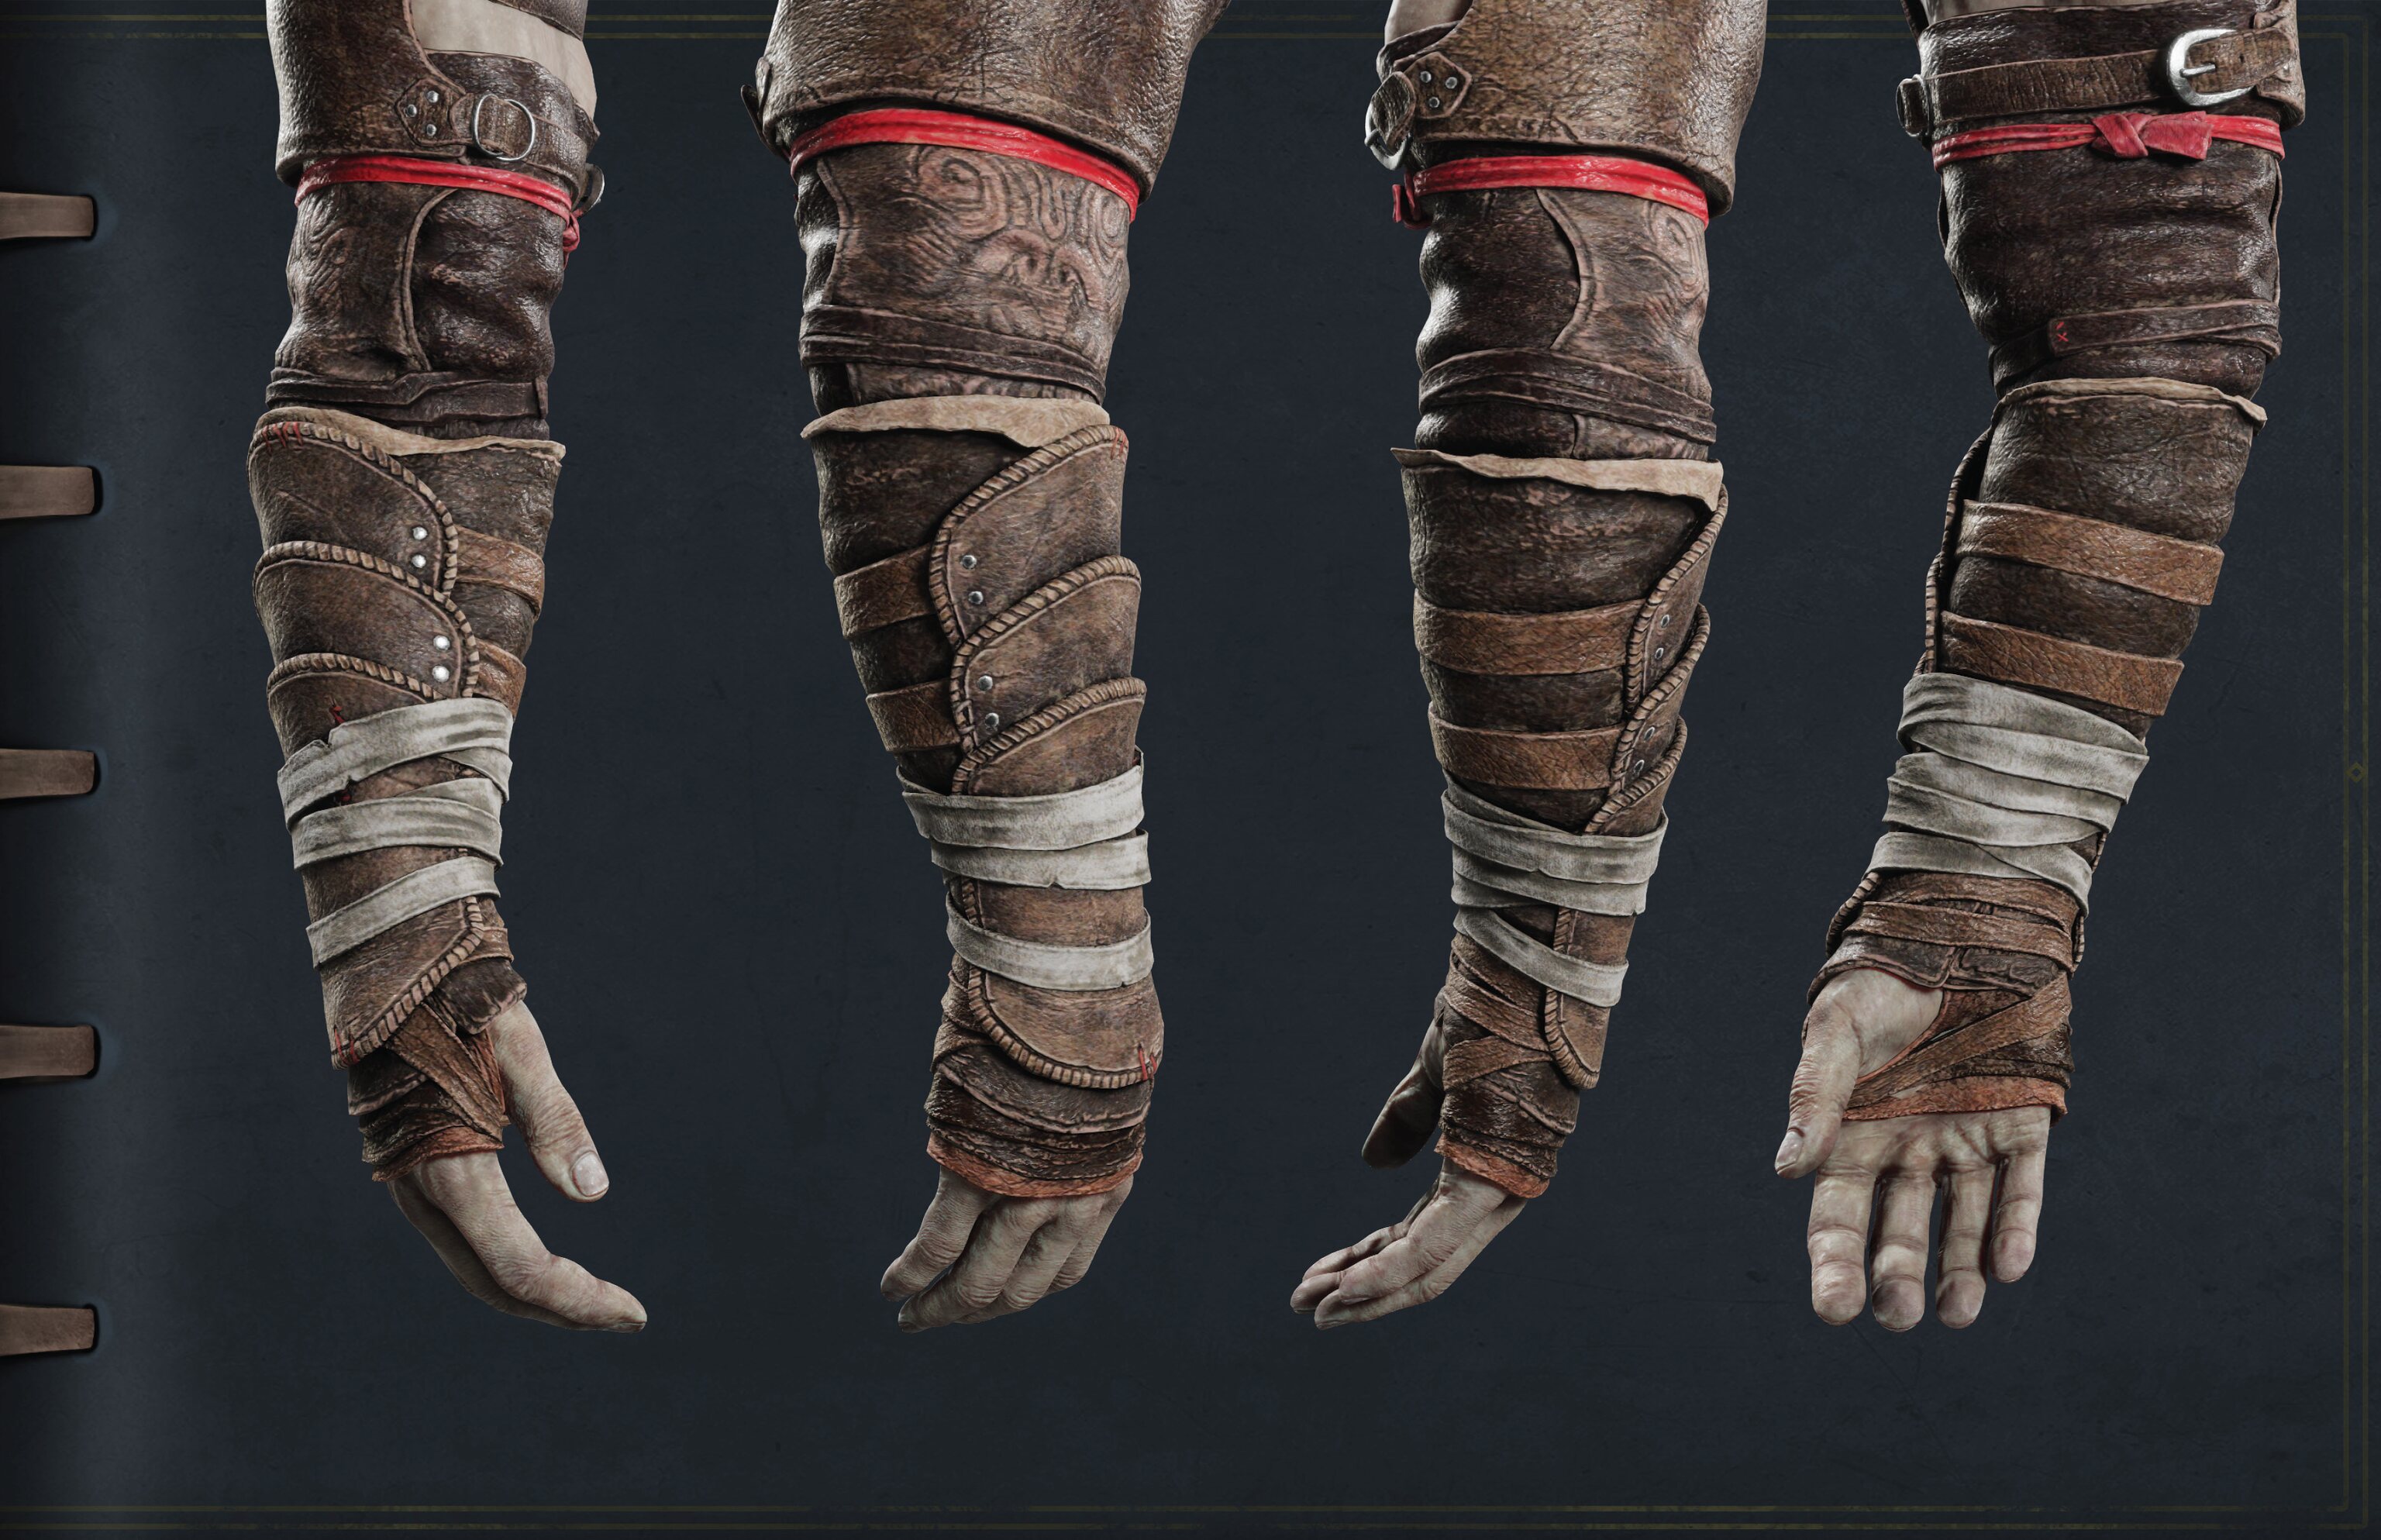 Imagen de Kratos de la guía de cosplay que muestra su brazo derecho desde varios ángulos.